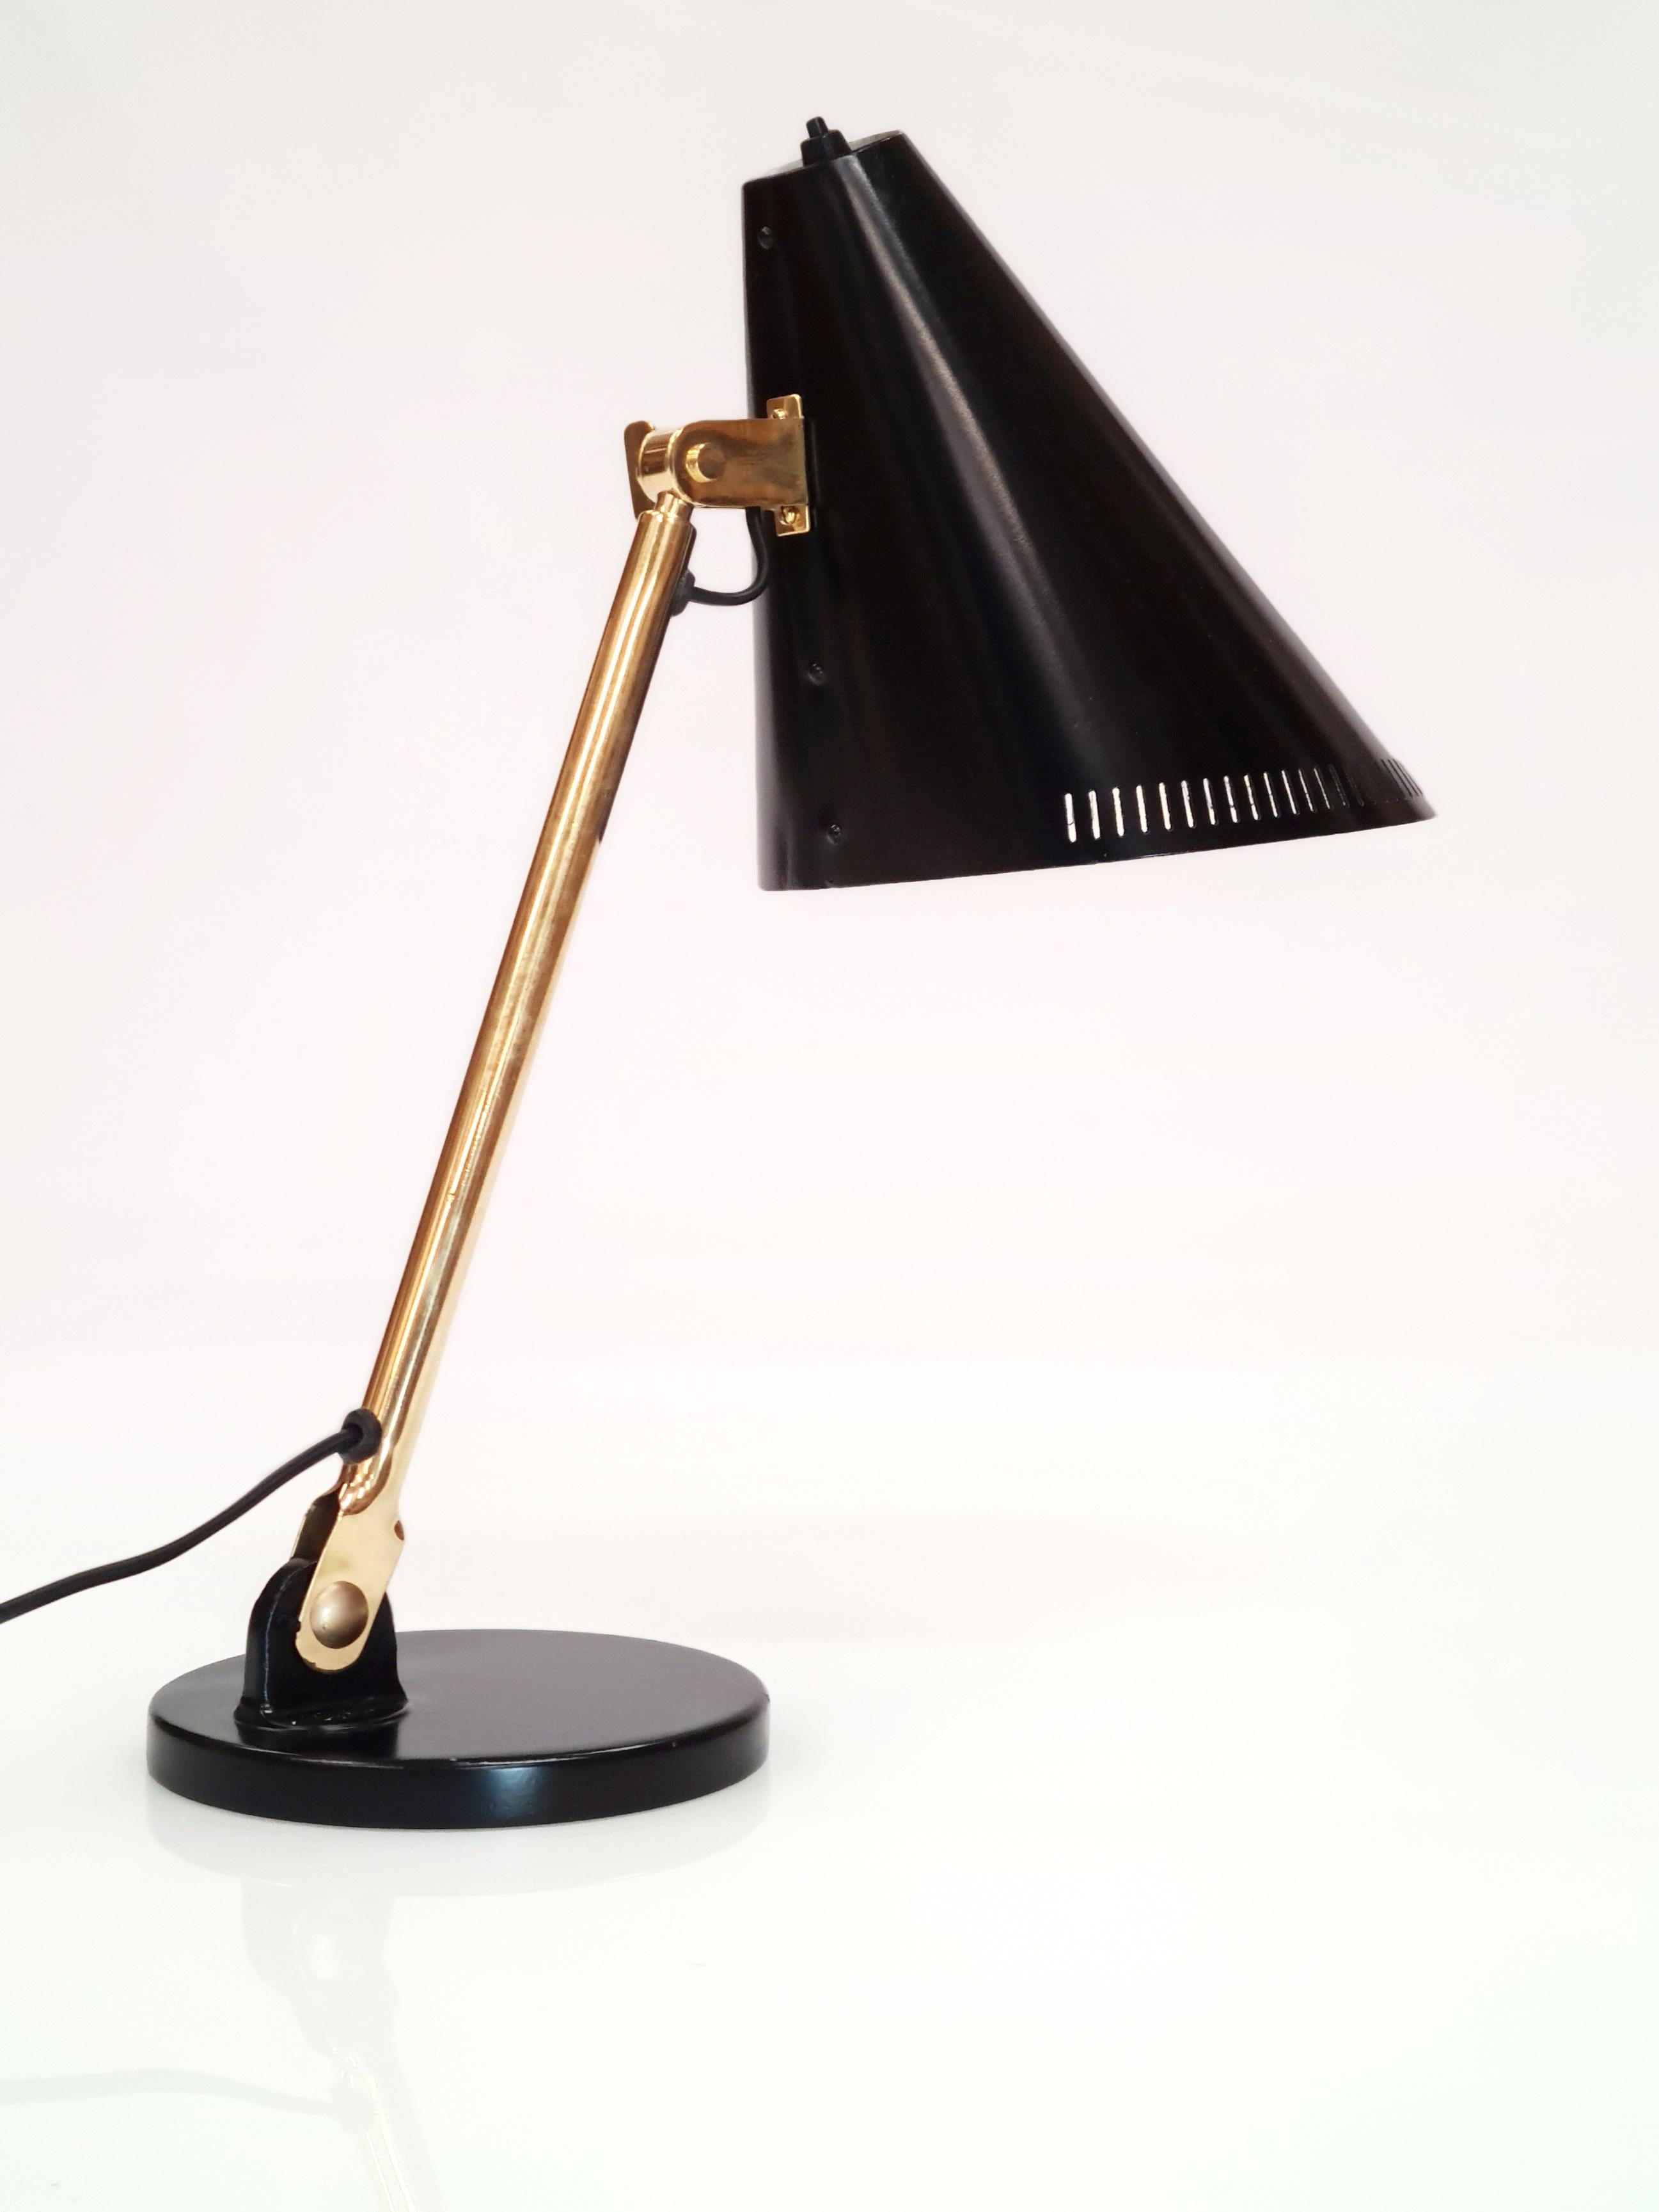 Cette première lampe de table conçue par Paavo Tynell est bien connue et considérée par beaucoup comme le point pivot à partir duquel un changement dans ses conceptions a commencé à apparaître. C'est l'un des premiers modèles à comporter des